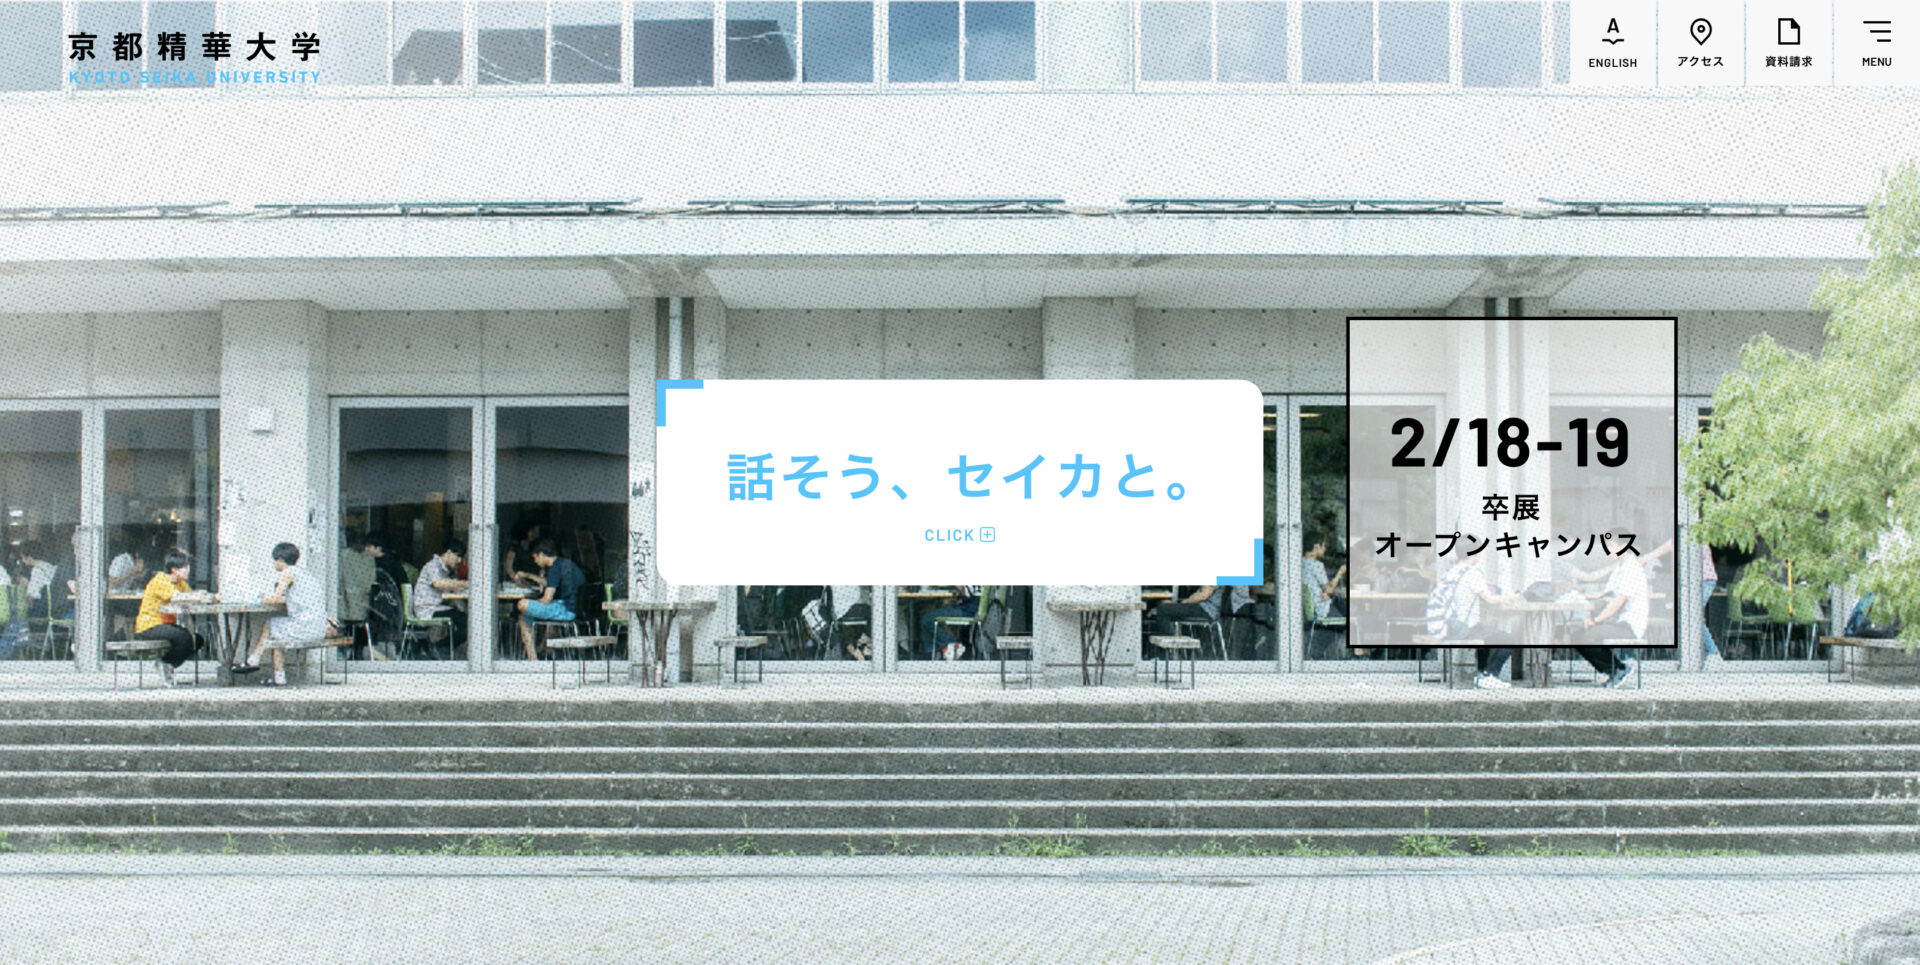 ふれアートカフェVol.3 が京都精華大学公式サイトに掲載されました